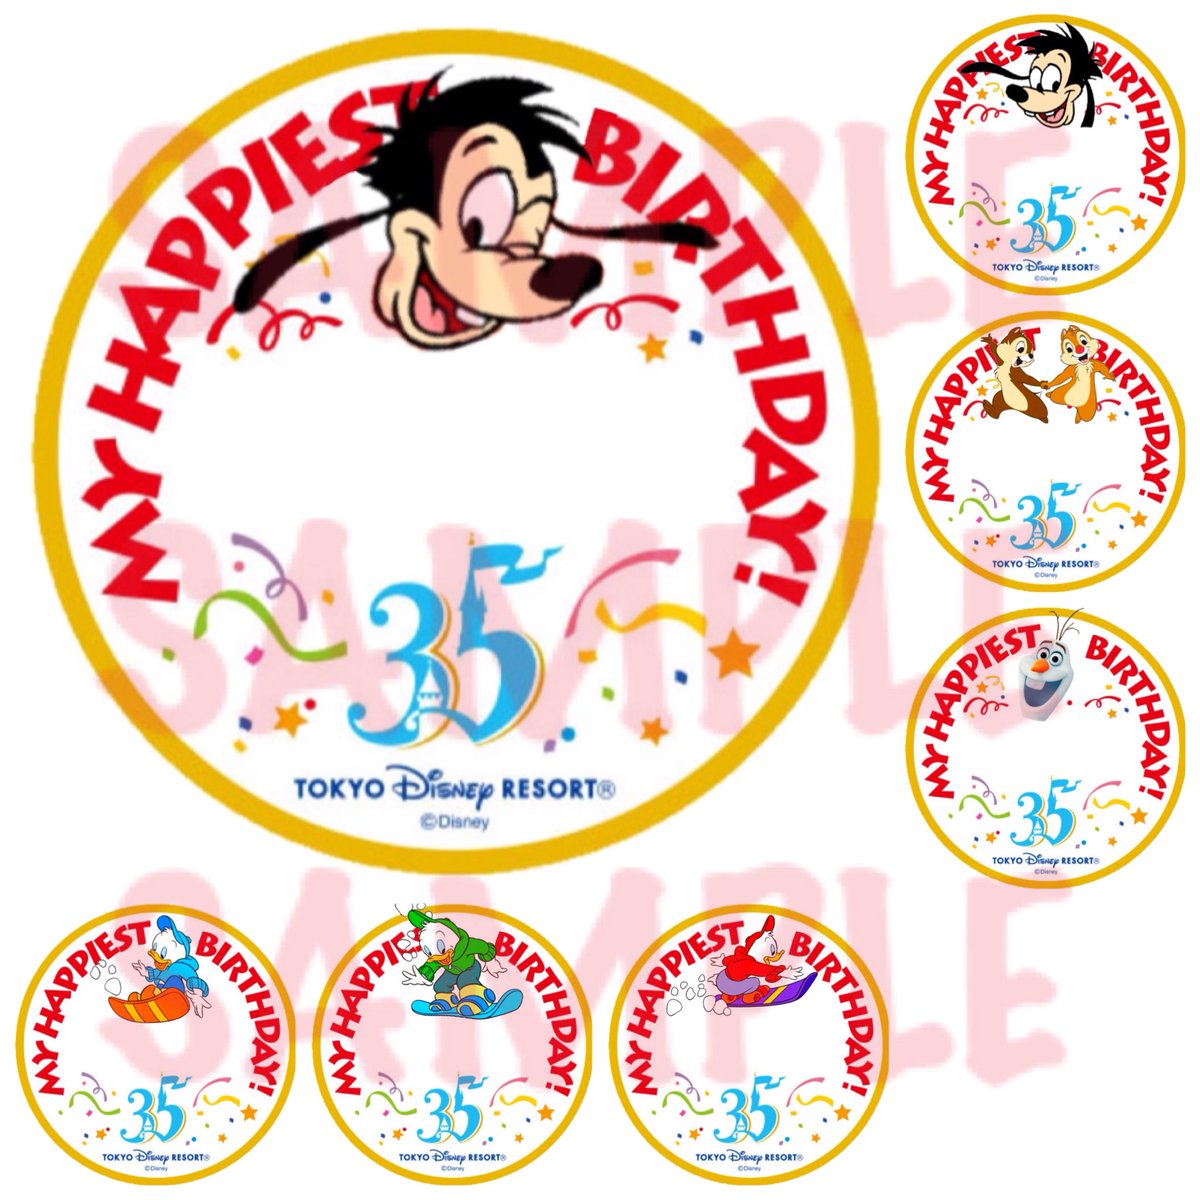 Kay 自分の誕生日まであと3日だから お遊び半分でいっぱい作った 35周年バージョン ディズニー バースデーシール Disney Birthday Stickers T Co Rahspjuws8 Twitter